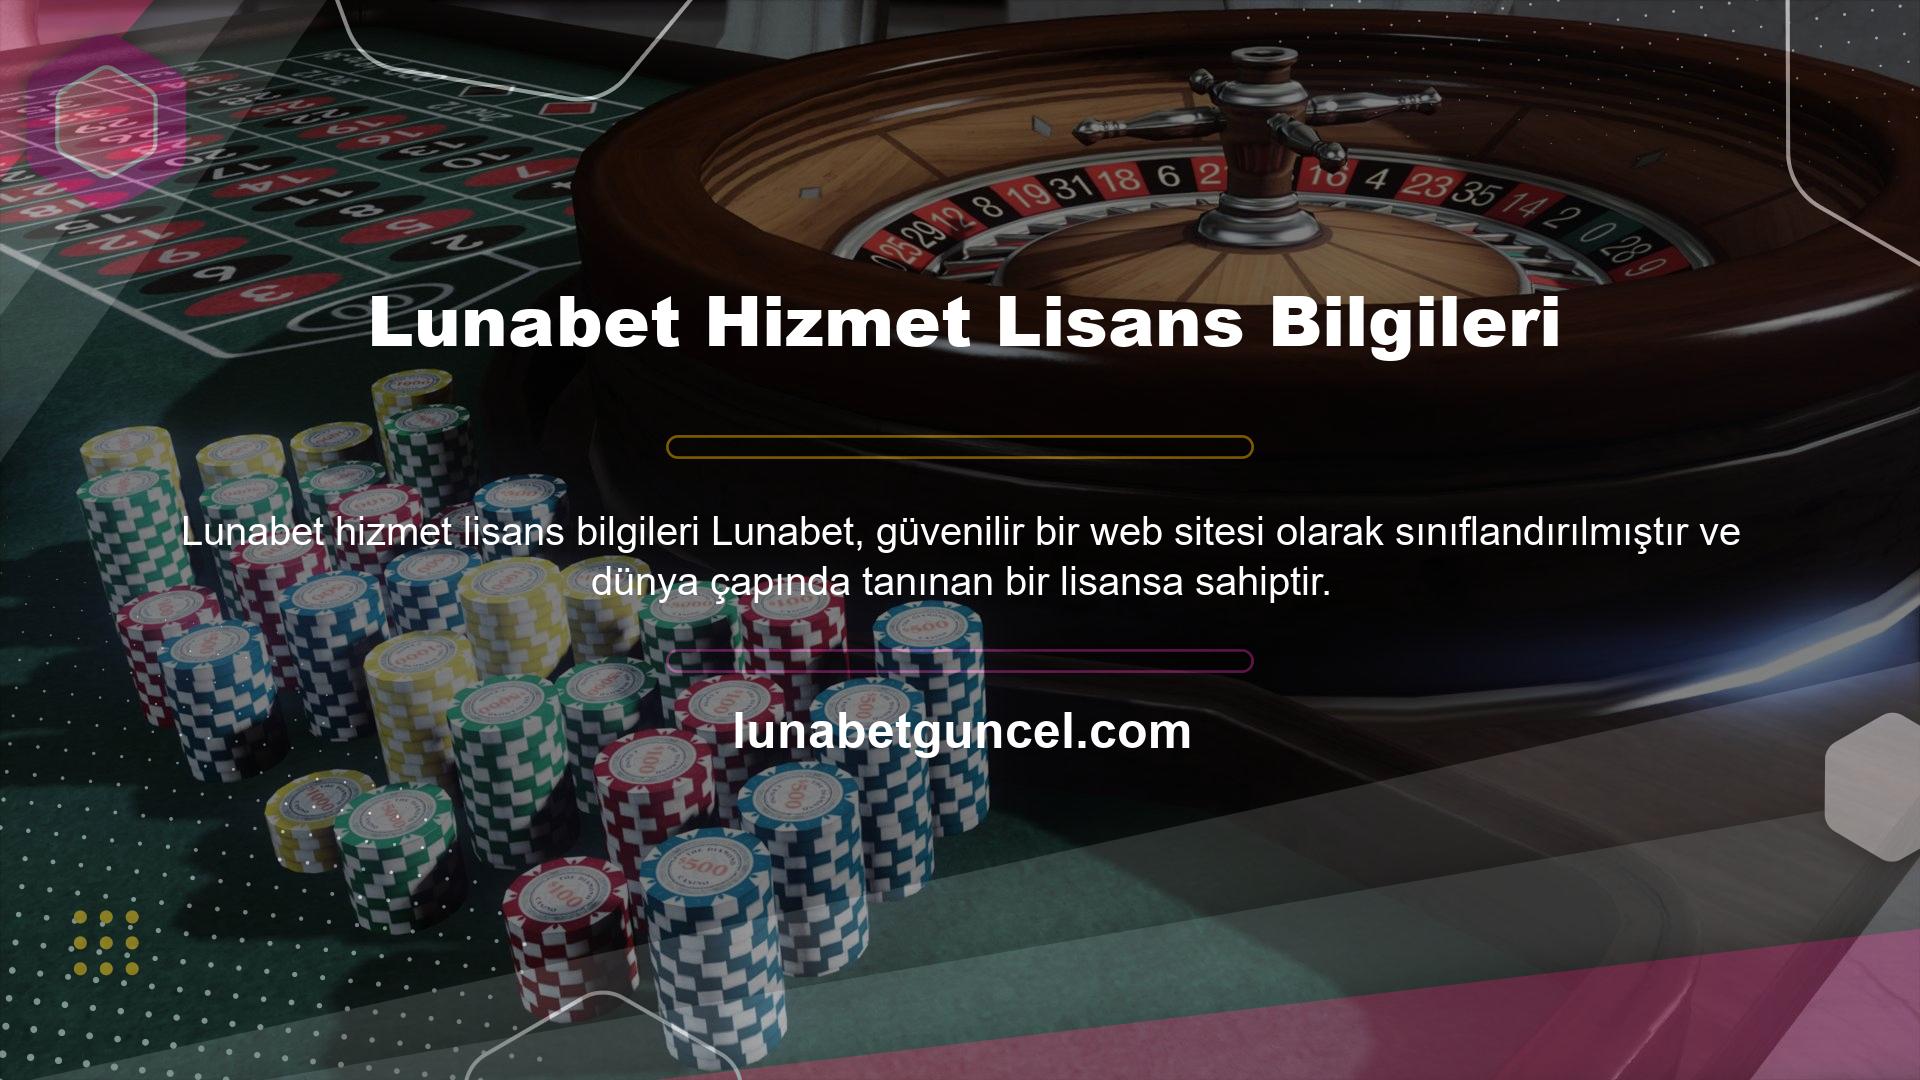 Türkiye'de genel olarak casino yasak olduğu için bu site zaman zaman adres değiştirmek zorunda kalmaktadır